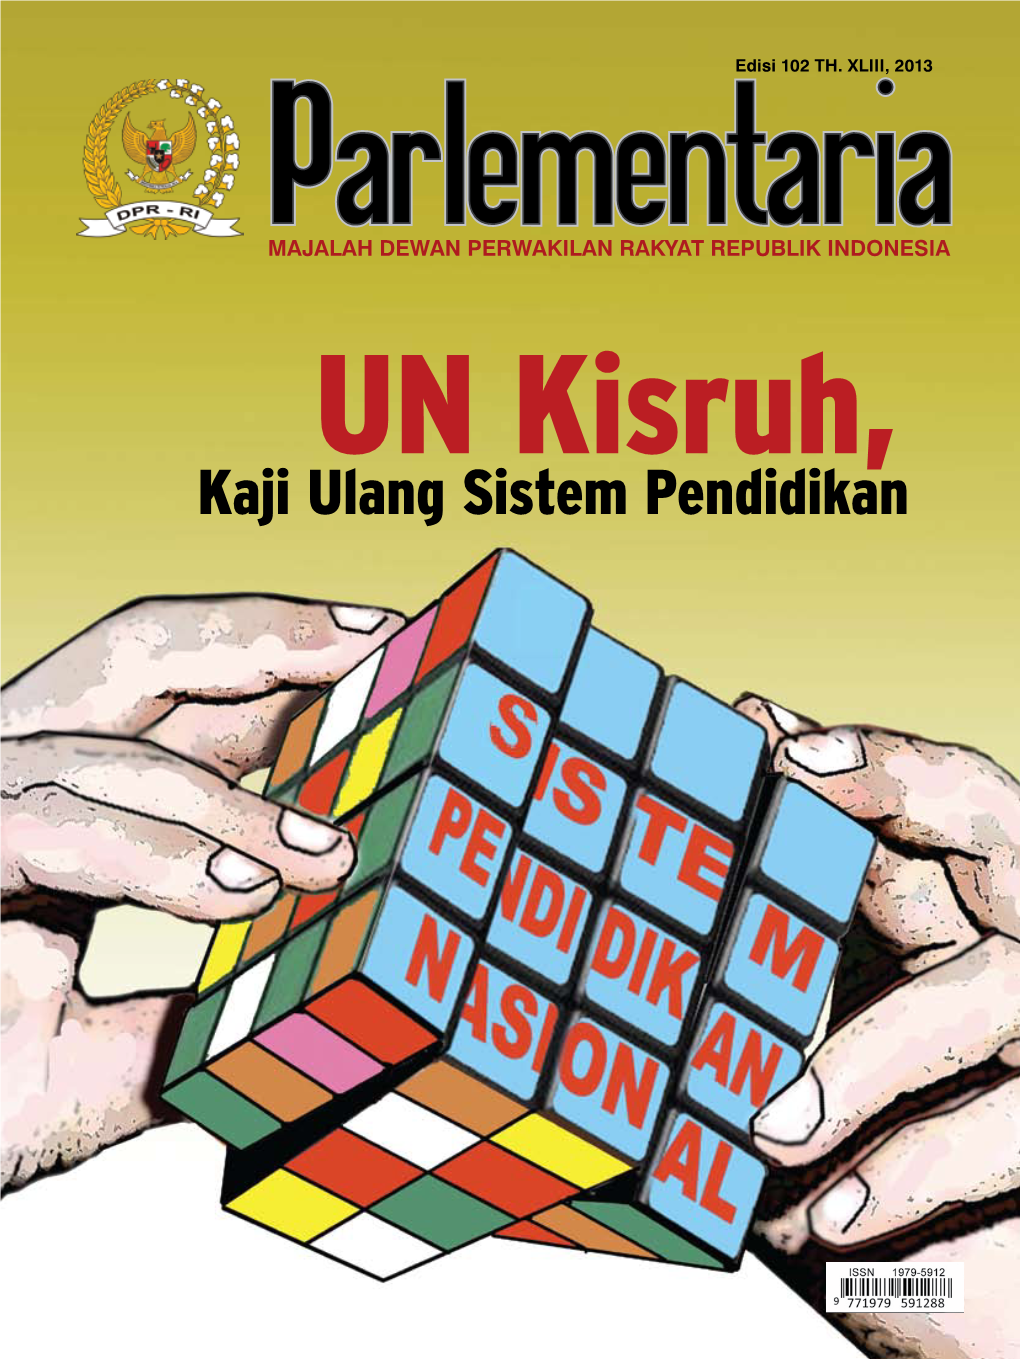 Edisi 102 TH. XLIII, 2013 PENGAWAS UMUM: Pimpinan DPR-RI